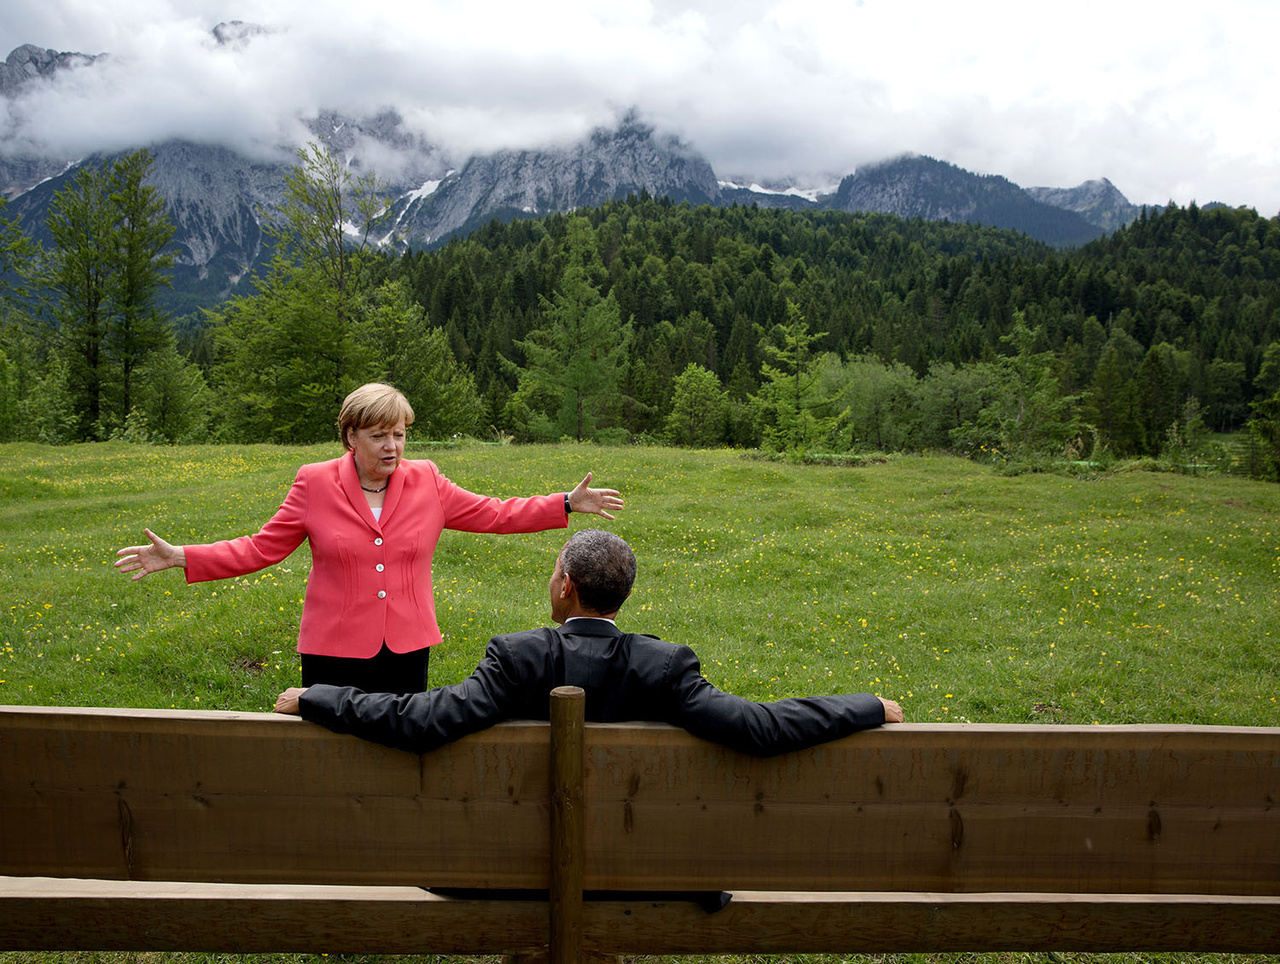 Angela Merkel és Obama egy G7-csúcs szünetében. Így nézhet ki, amikor a világ két fontos vezetője négyszemközt megbeszél valamit. A megbeszélést a bajor Alpokban tartották, a vezetők biztosításához 20 ezer német rendőrt mozgósítottak. A G7-ben Németország, az Egyesült Államok, Franciaország, Japán, Kanada, Nagy-Britannia és Olaszország állam-, illetve kormányfője vesz részt, akikhez csatlakozott az Európa Tanács és az Európai Bizottság elnöke is. A hetekhez 1998-ban csatlakozott Oroszország, de 2014-ben az ukrajnai események miatt felfüggesztették a tagságát. 